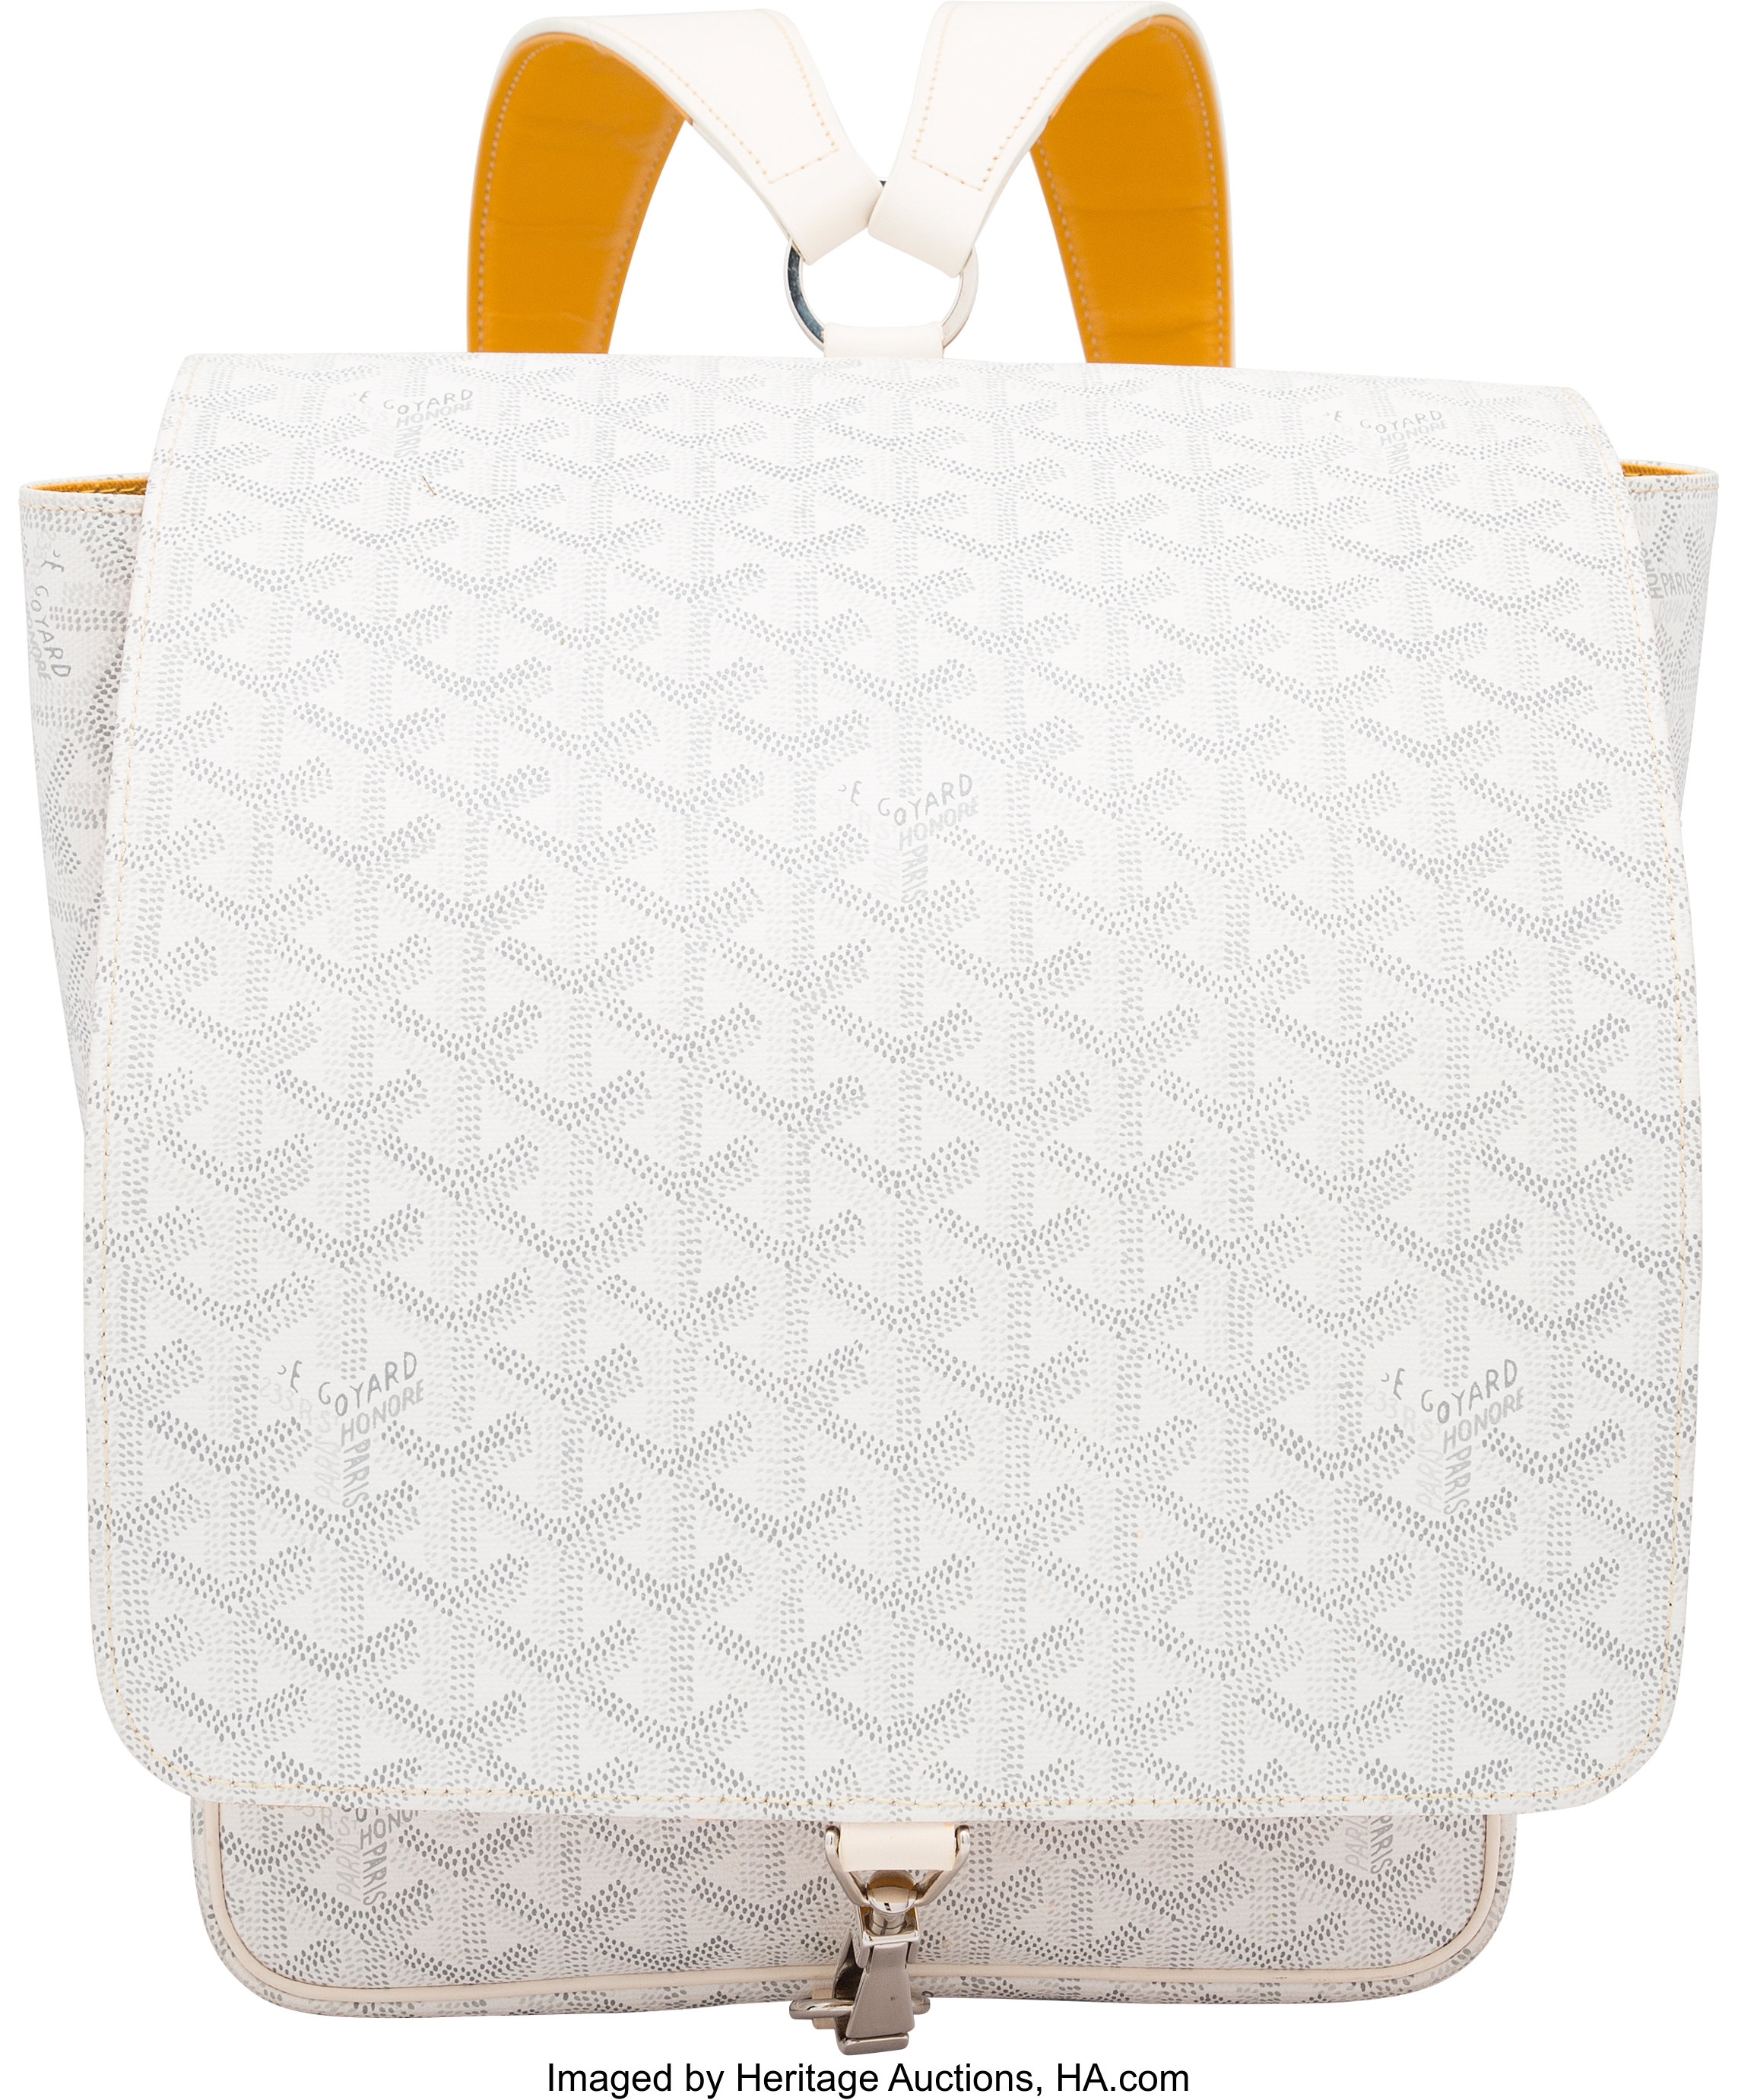 goyard backpack white